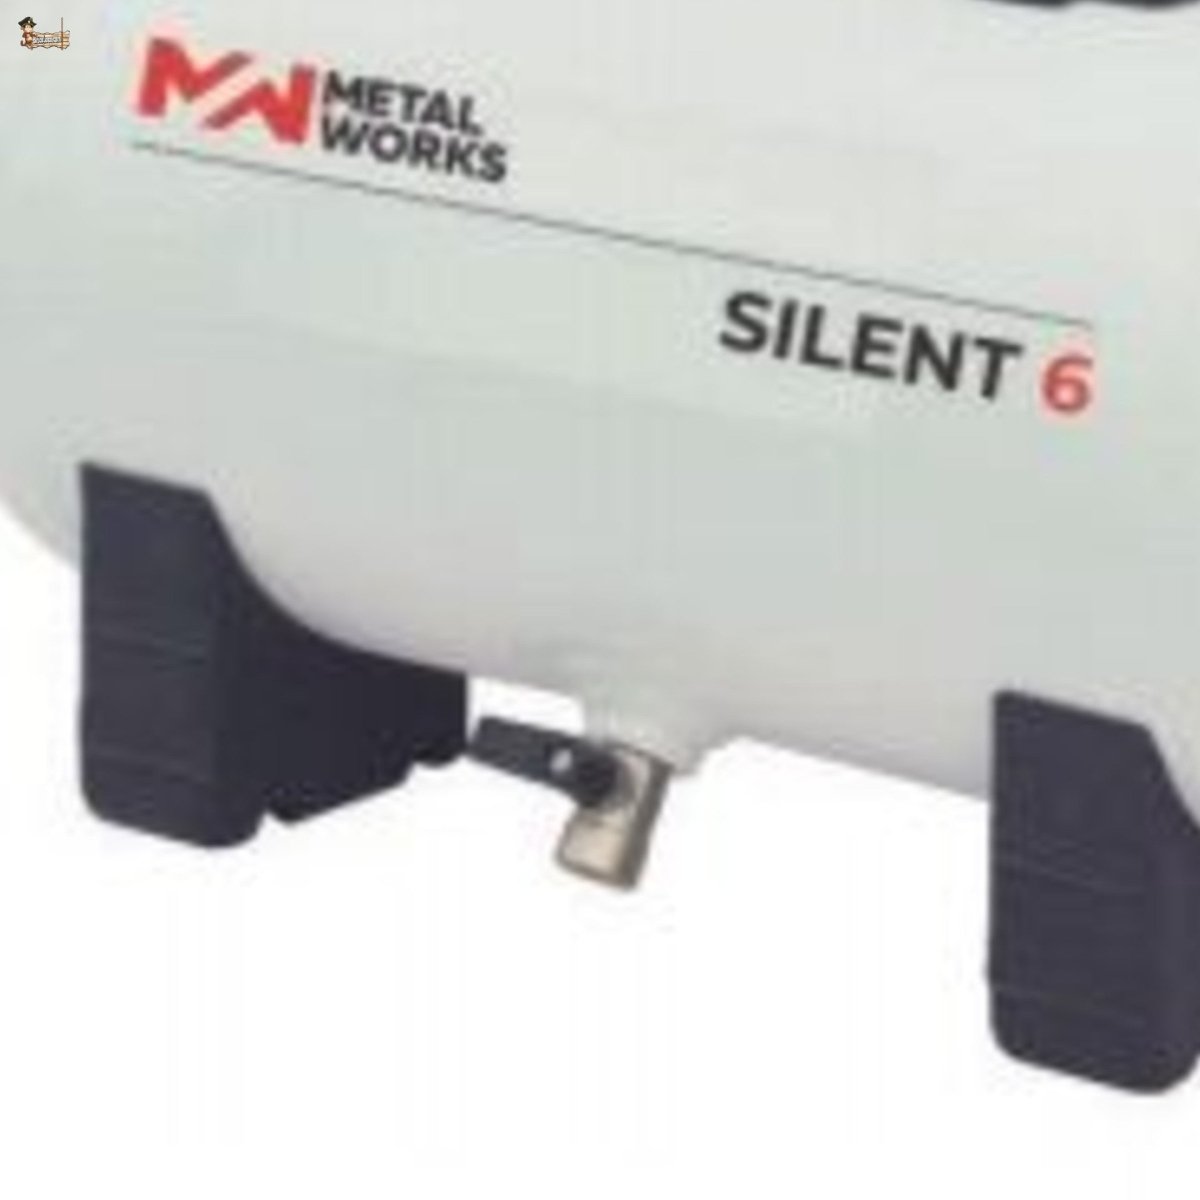 Compresor silencioso MetalWorks Silent 8